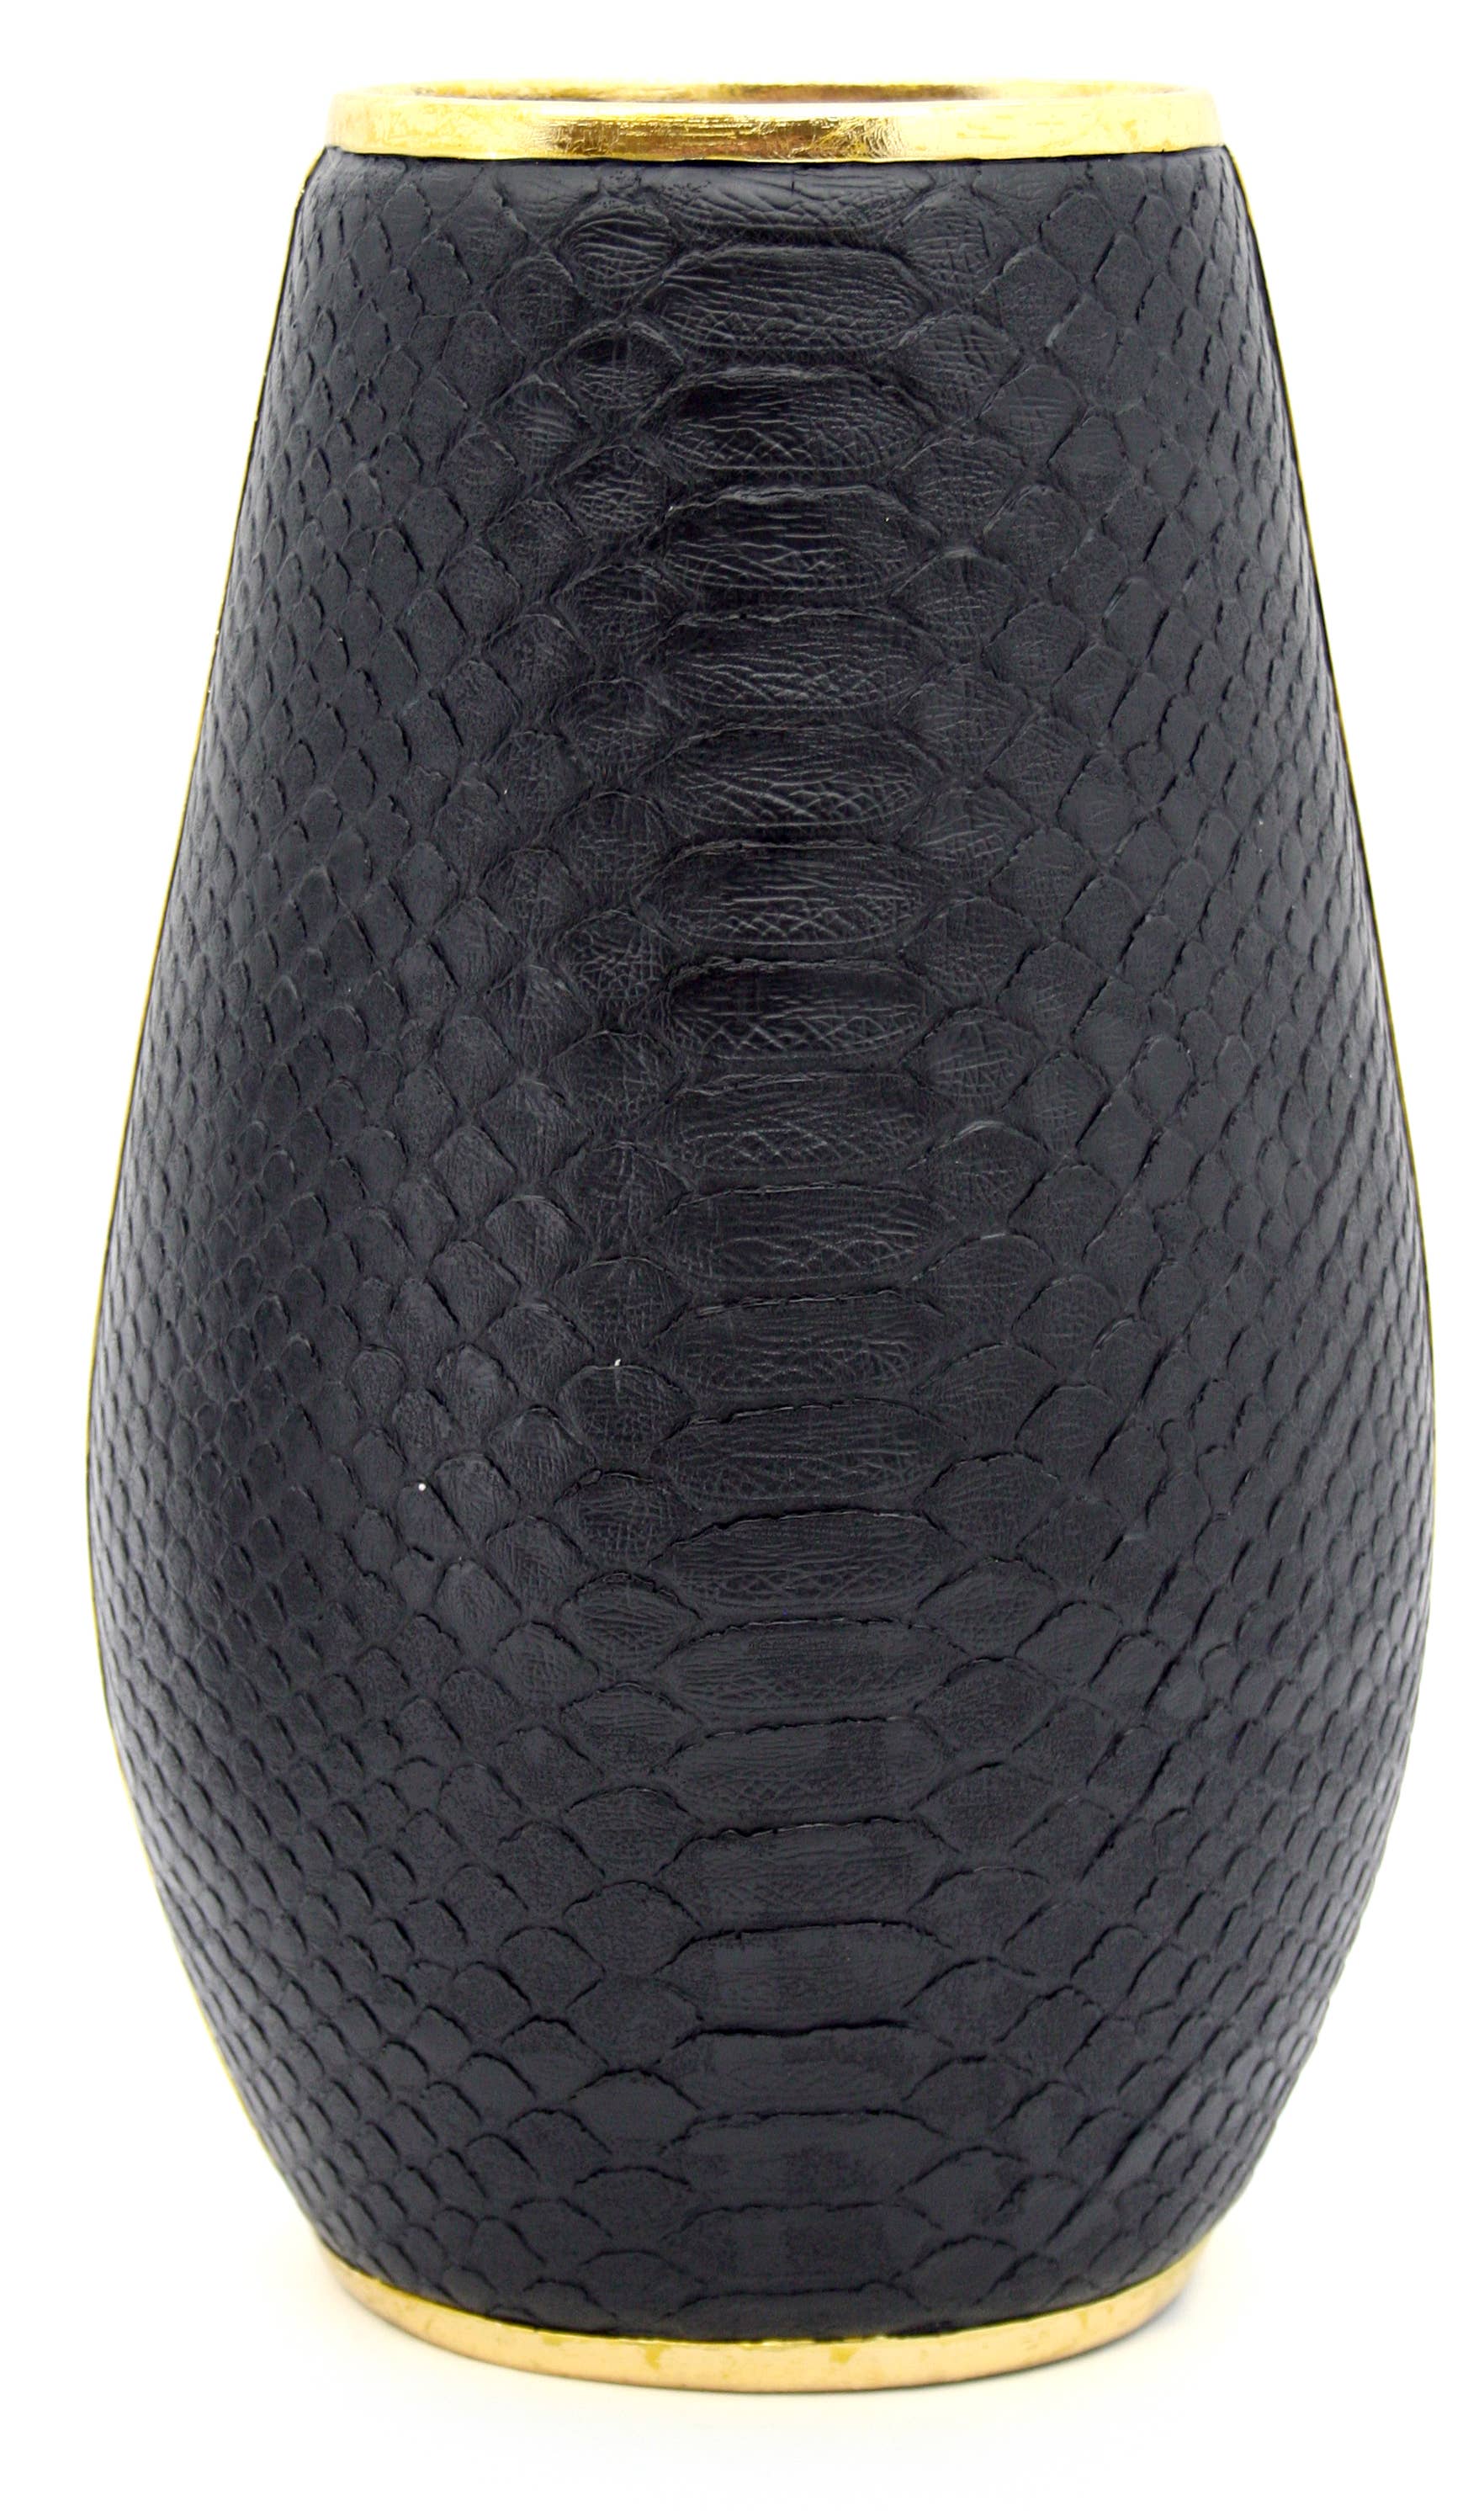 Black Boa Vase